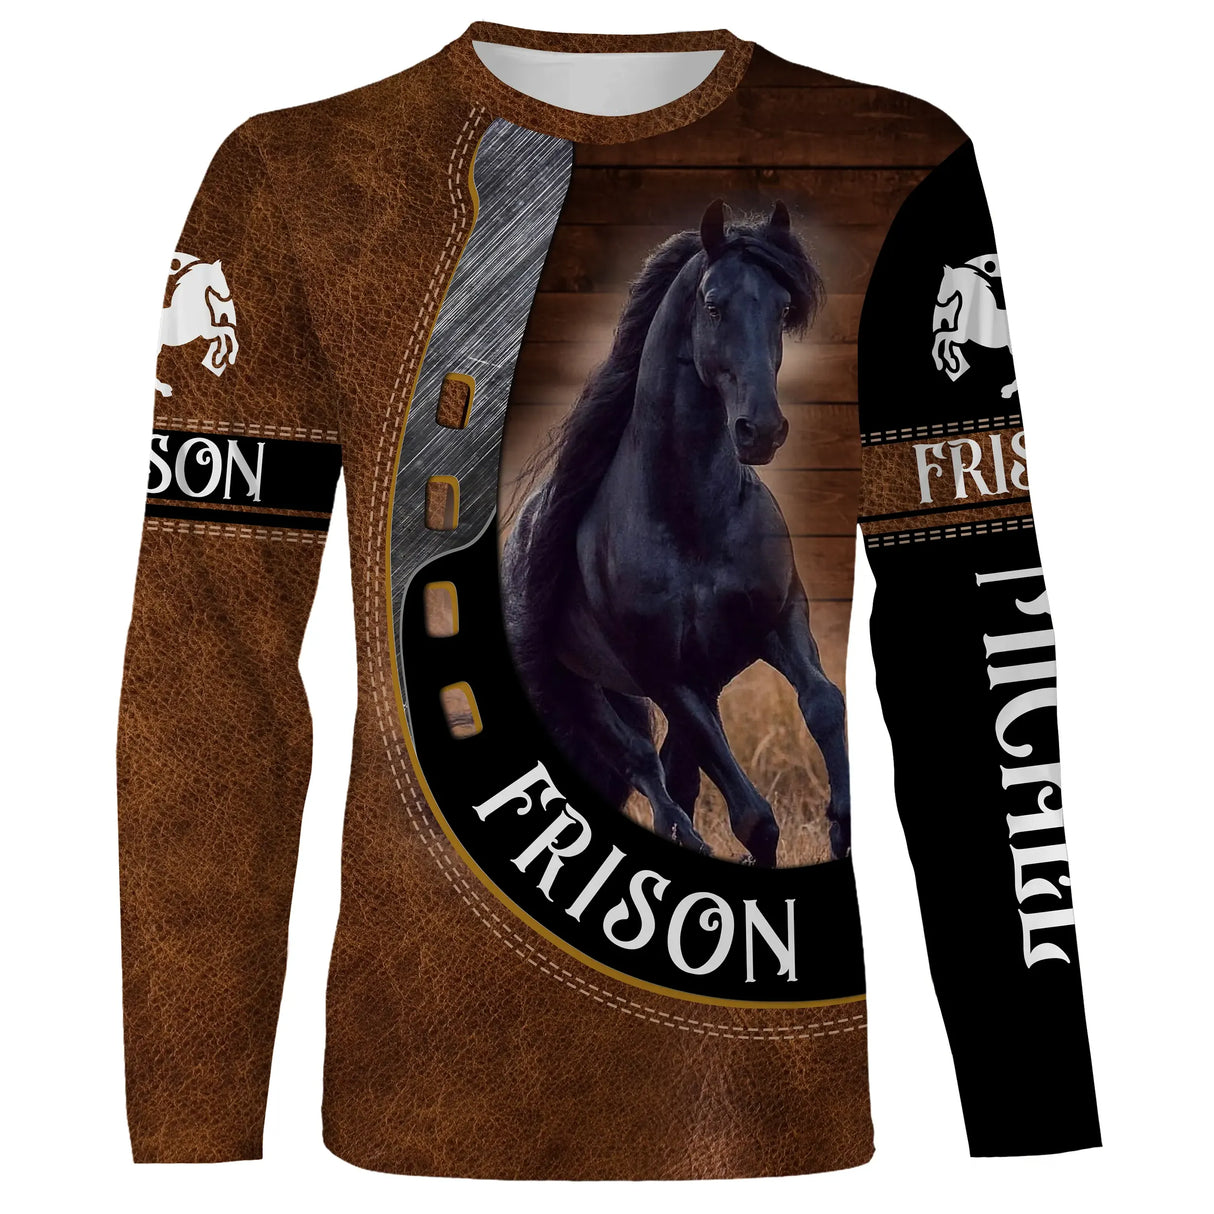 Friesenpferd, Sattelpferderasse, personalisiertes Reitgeschenk, Passionspferde, Liebe Friesen - CT05072206